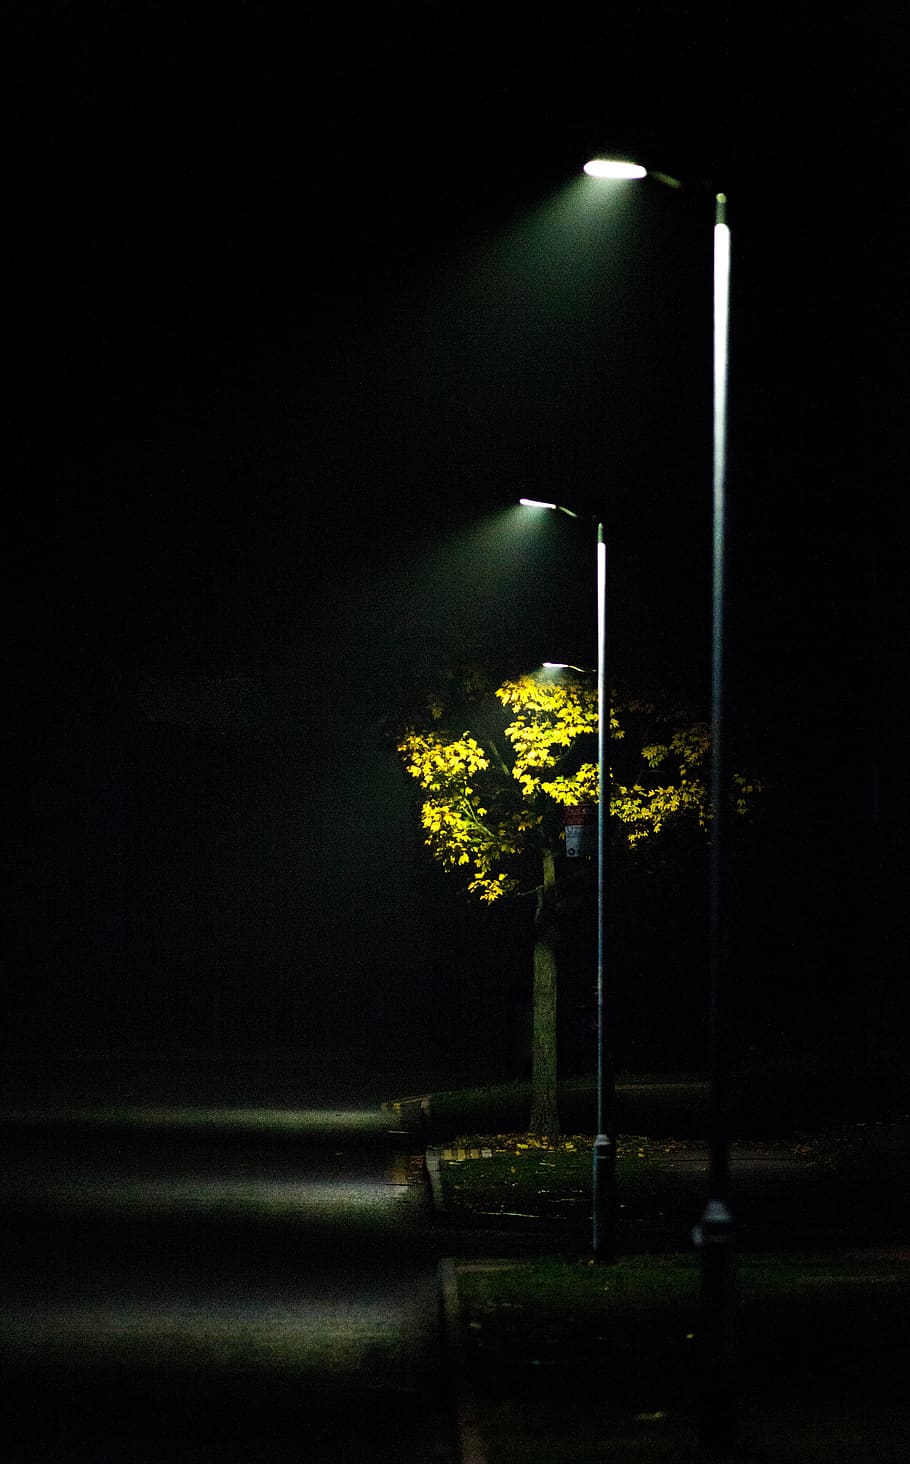 streetlight, mist, road light, scene, autumn, outdoor, night, lights, trees, illuminated